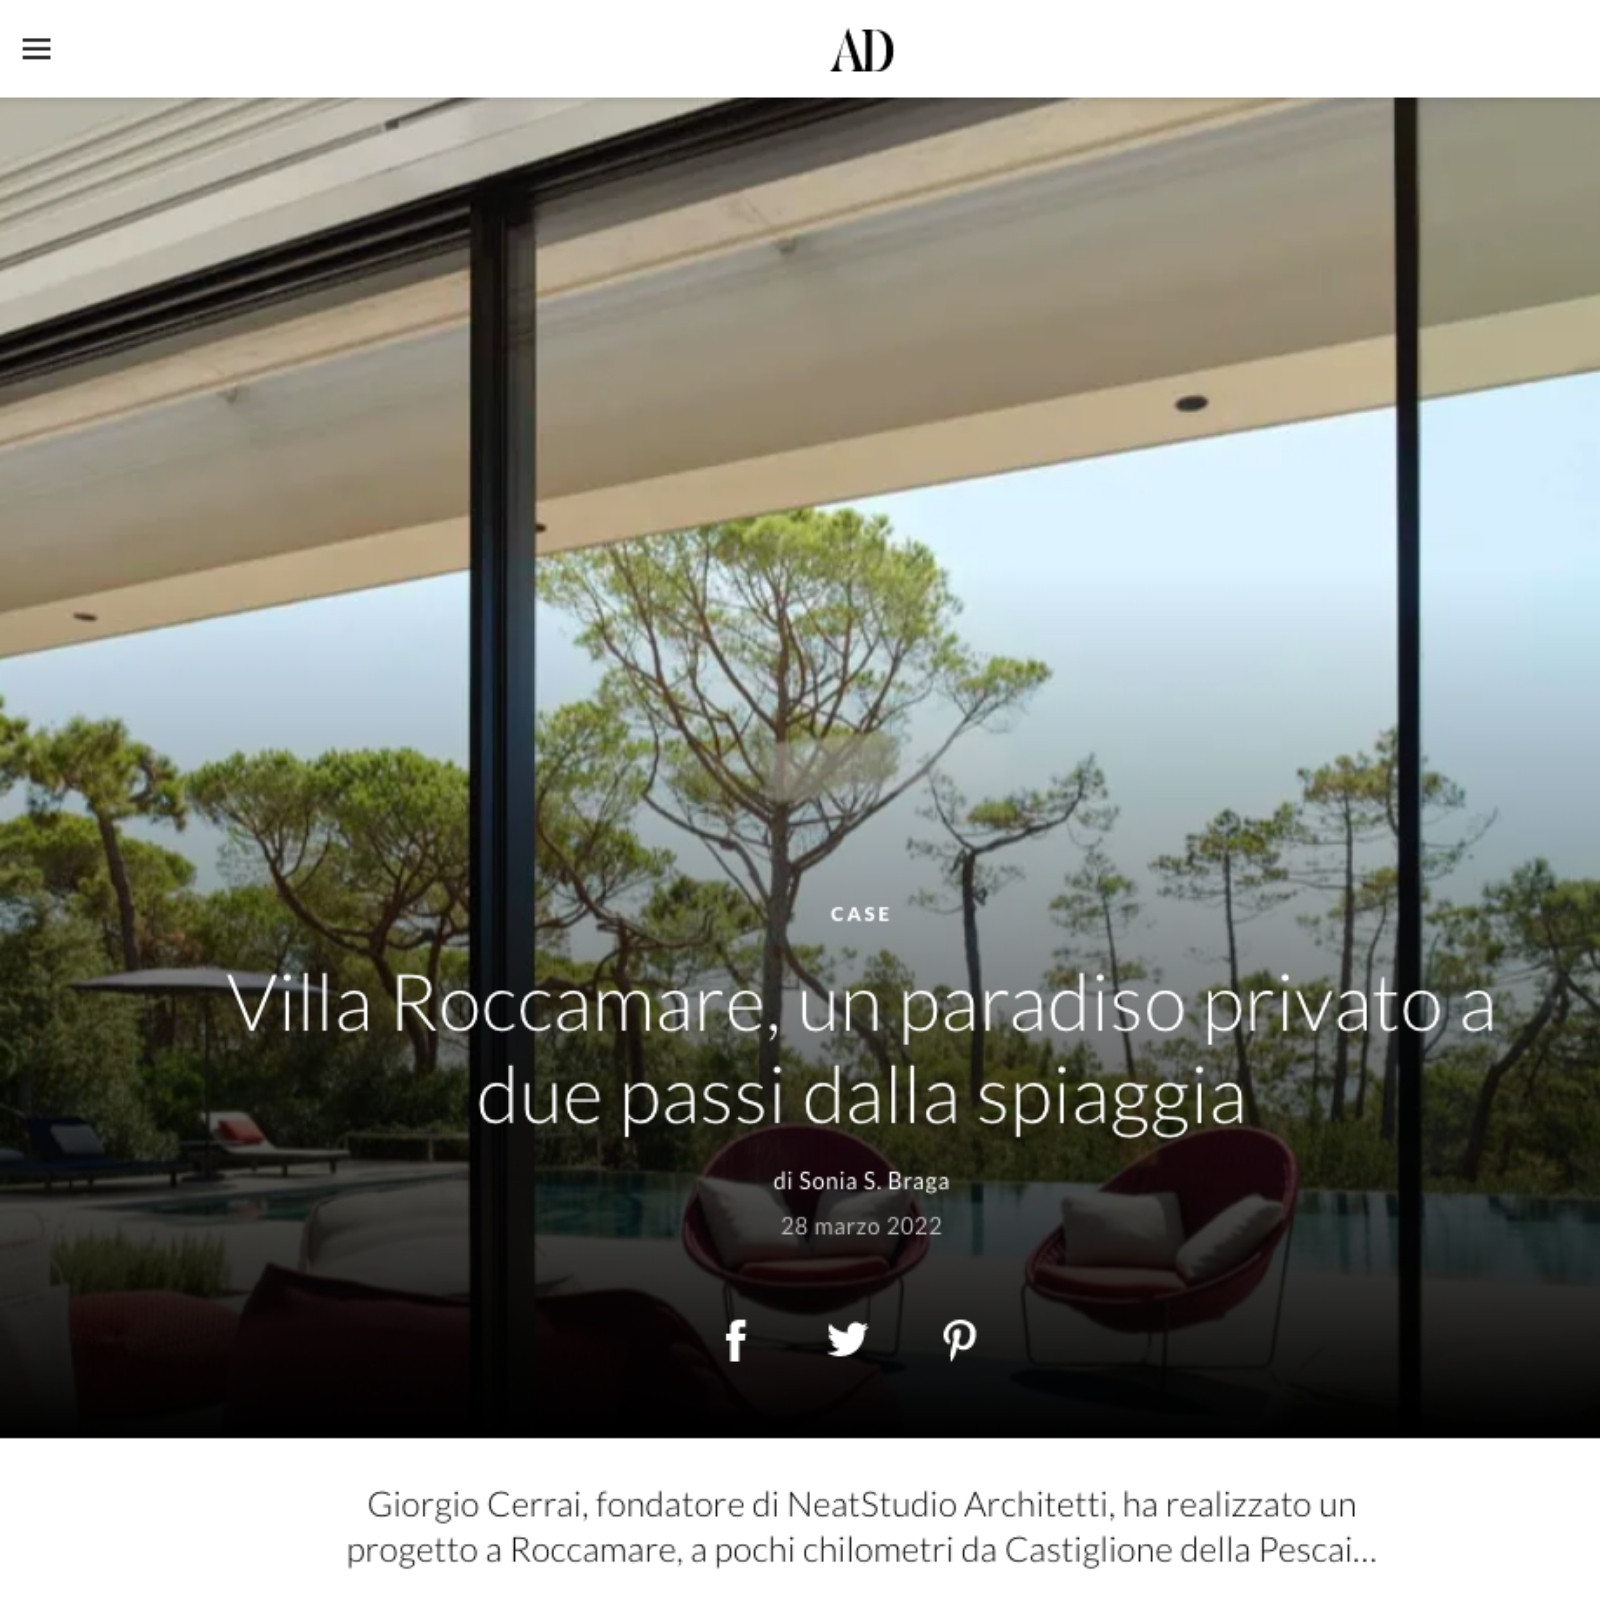 Made a Mano Press- AD - Villa Riccamare - Giorgio Cerrai, fondatore di NeatStudio Architetti